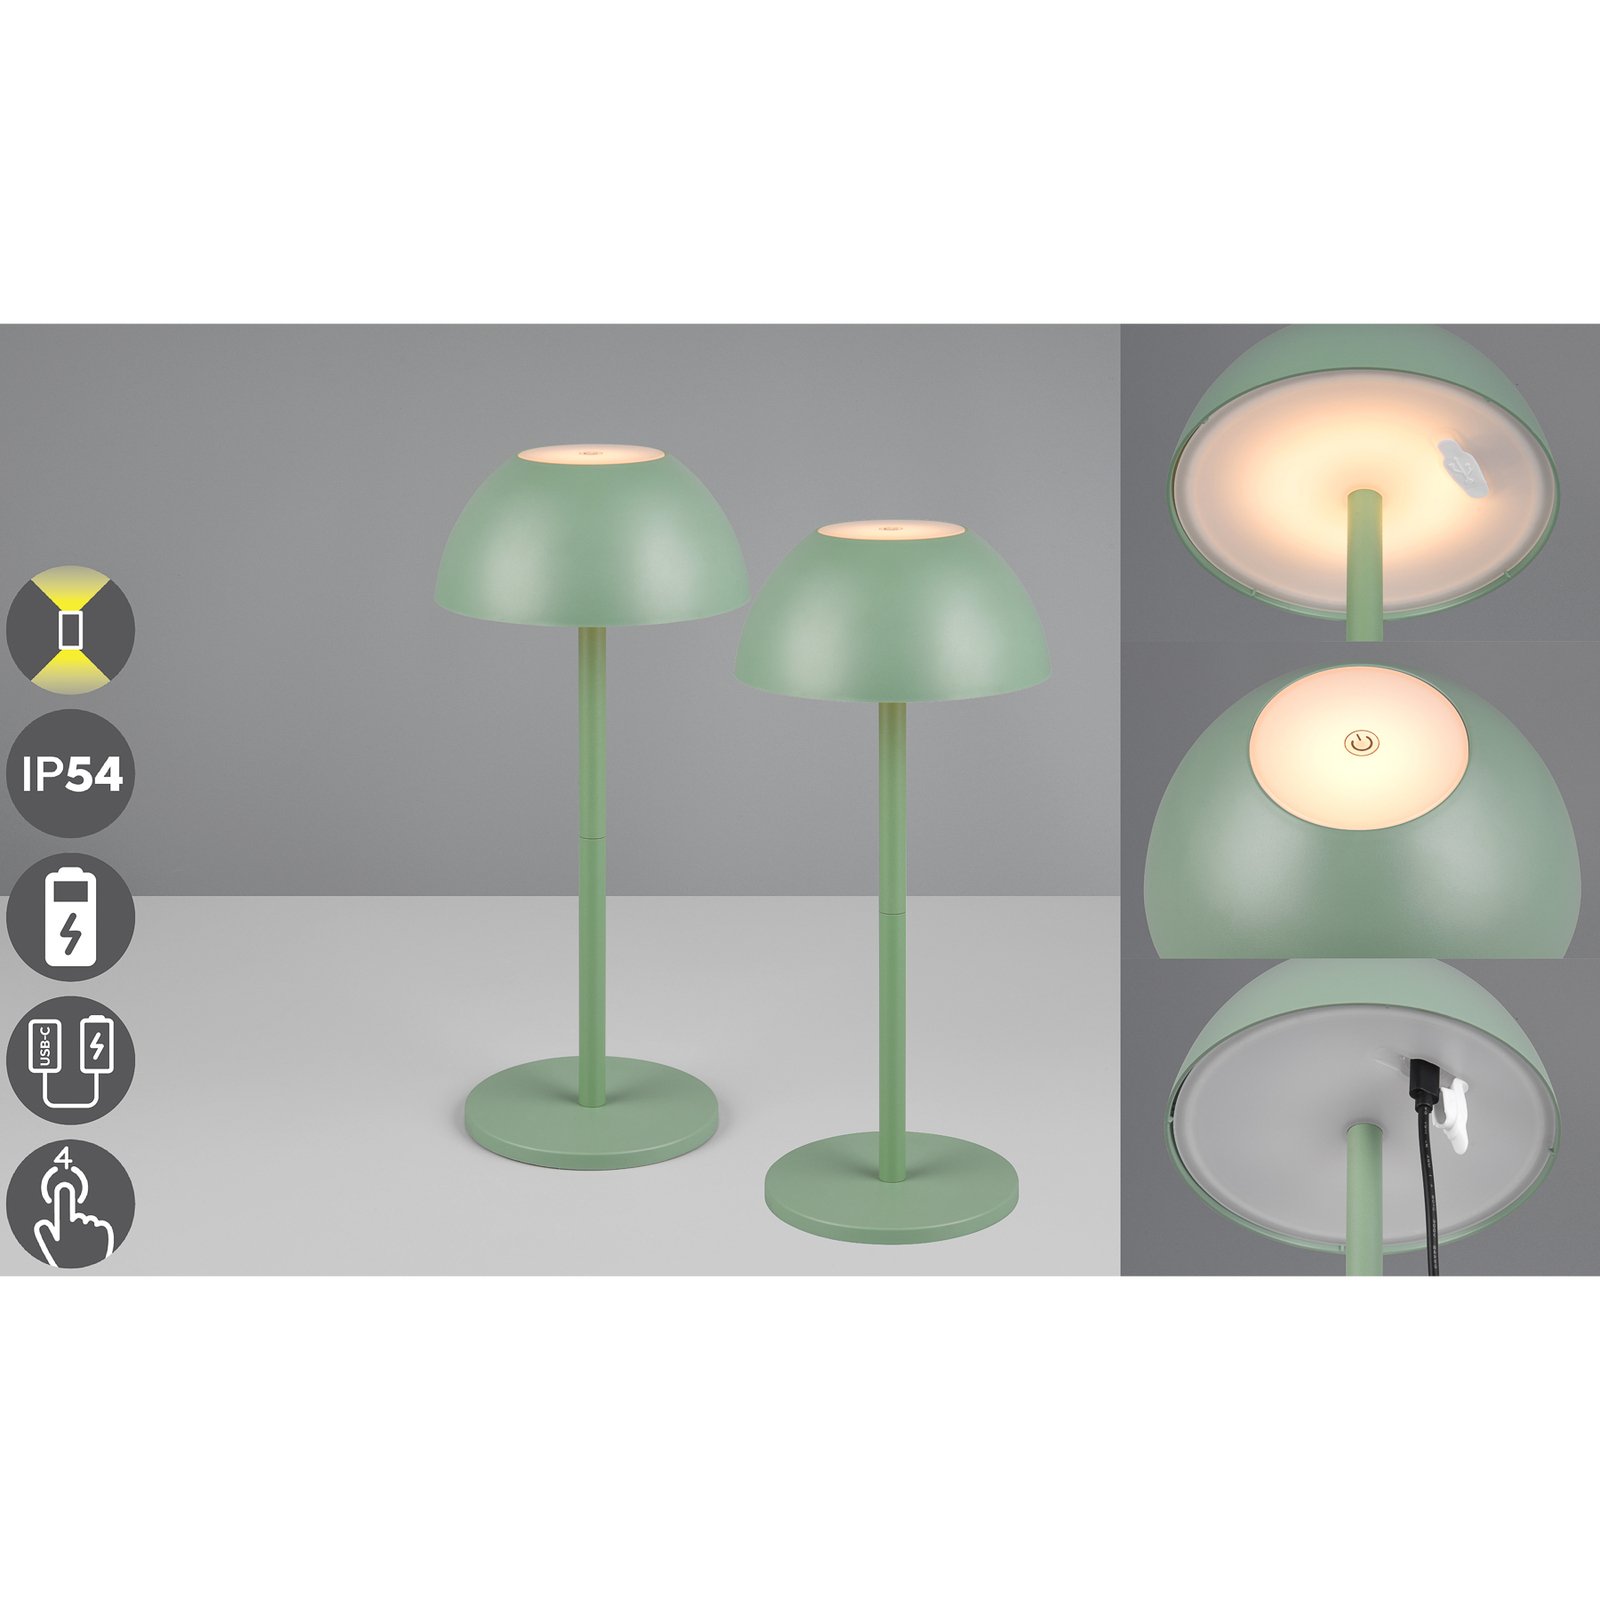 Ricardo LED oppladbar bordlampe, grønn, høyde 30 cm, plast